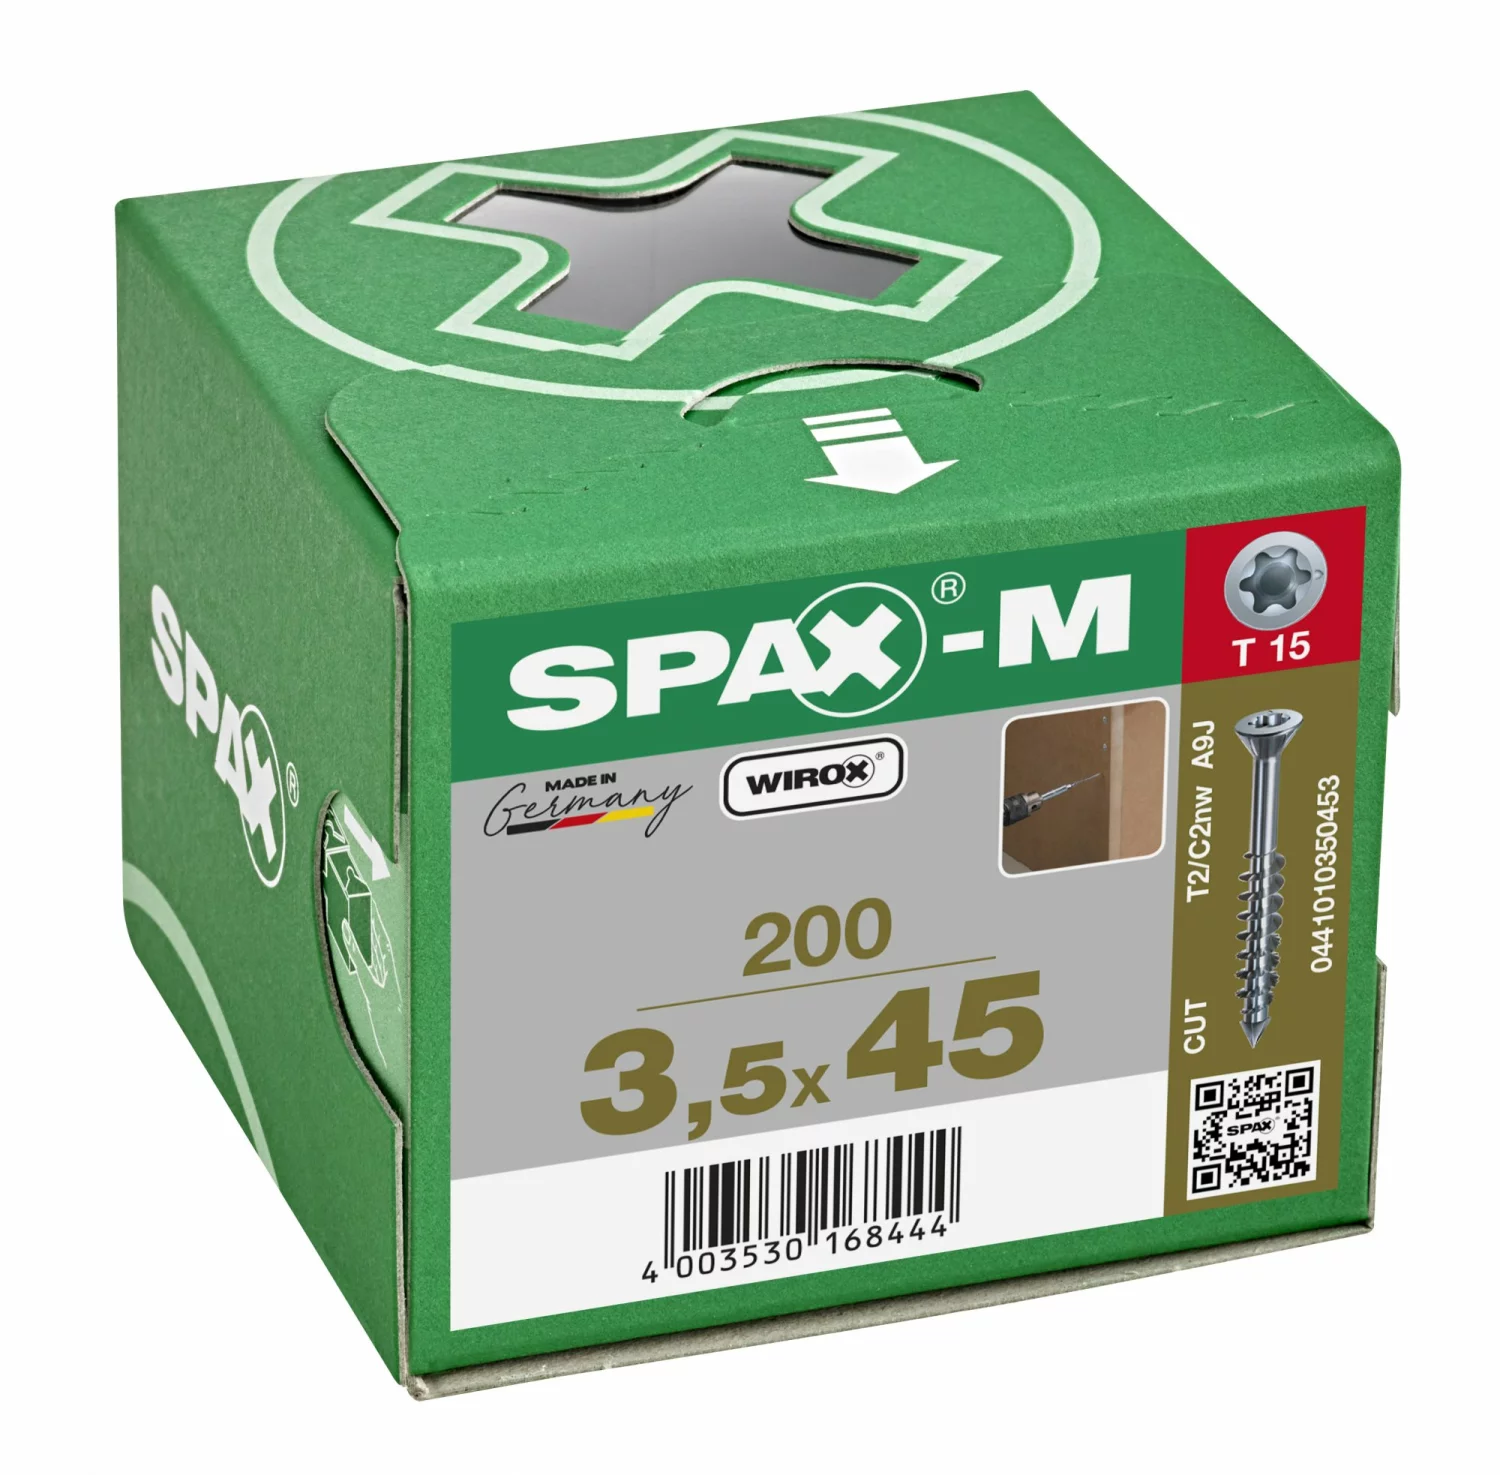 SPAX 441010350453 - SPAX-M, 3,5 x 45 mm, 200 pièces, Filetage partiel, Tête fraisée, T-STAR plus T15, Pointe CUT, WIROX-image